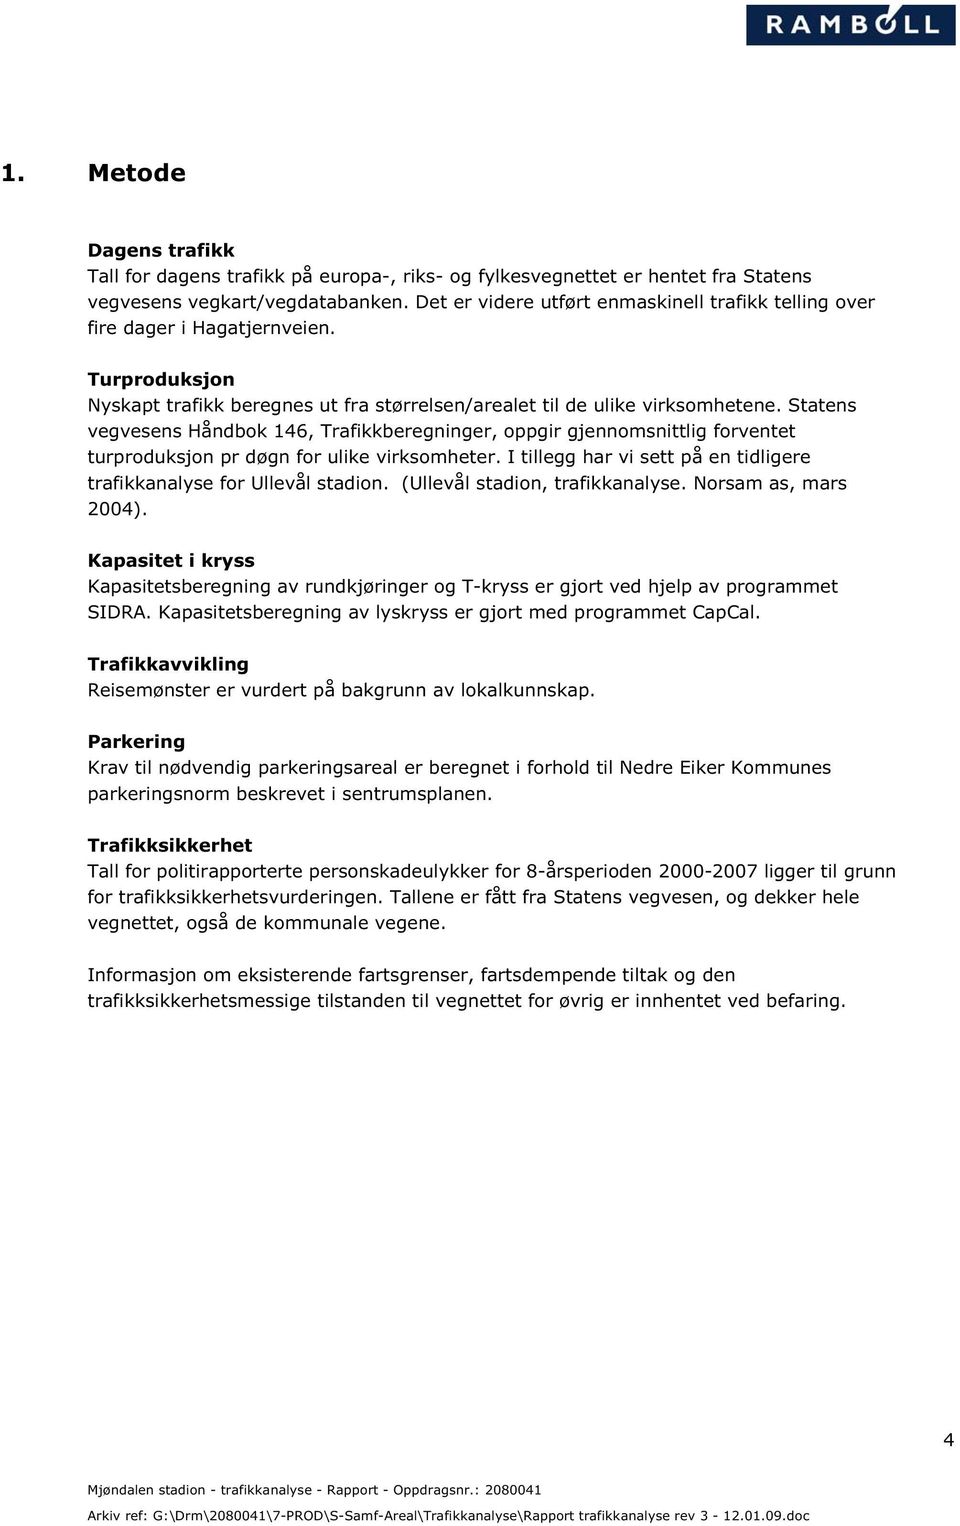 Statens vegvesens Håndbok 146, Trafikkberegninger, oppgir gjennomsnittlig forventet turproduksjon pr døgn for ulike virksomheter.